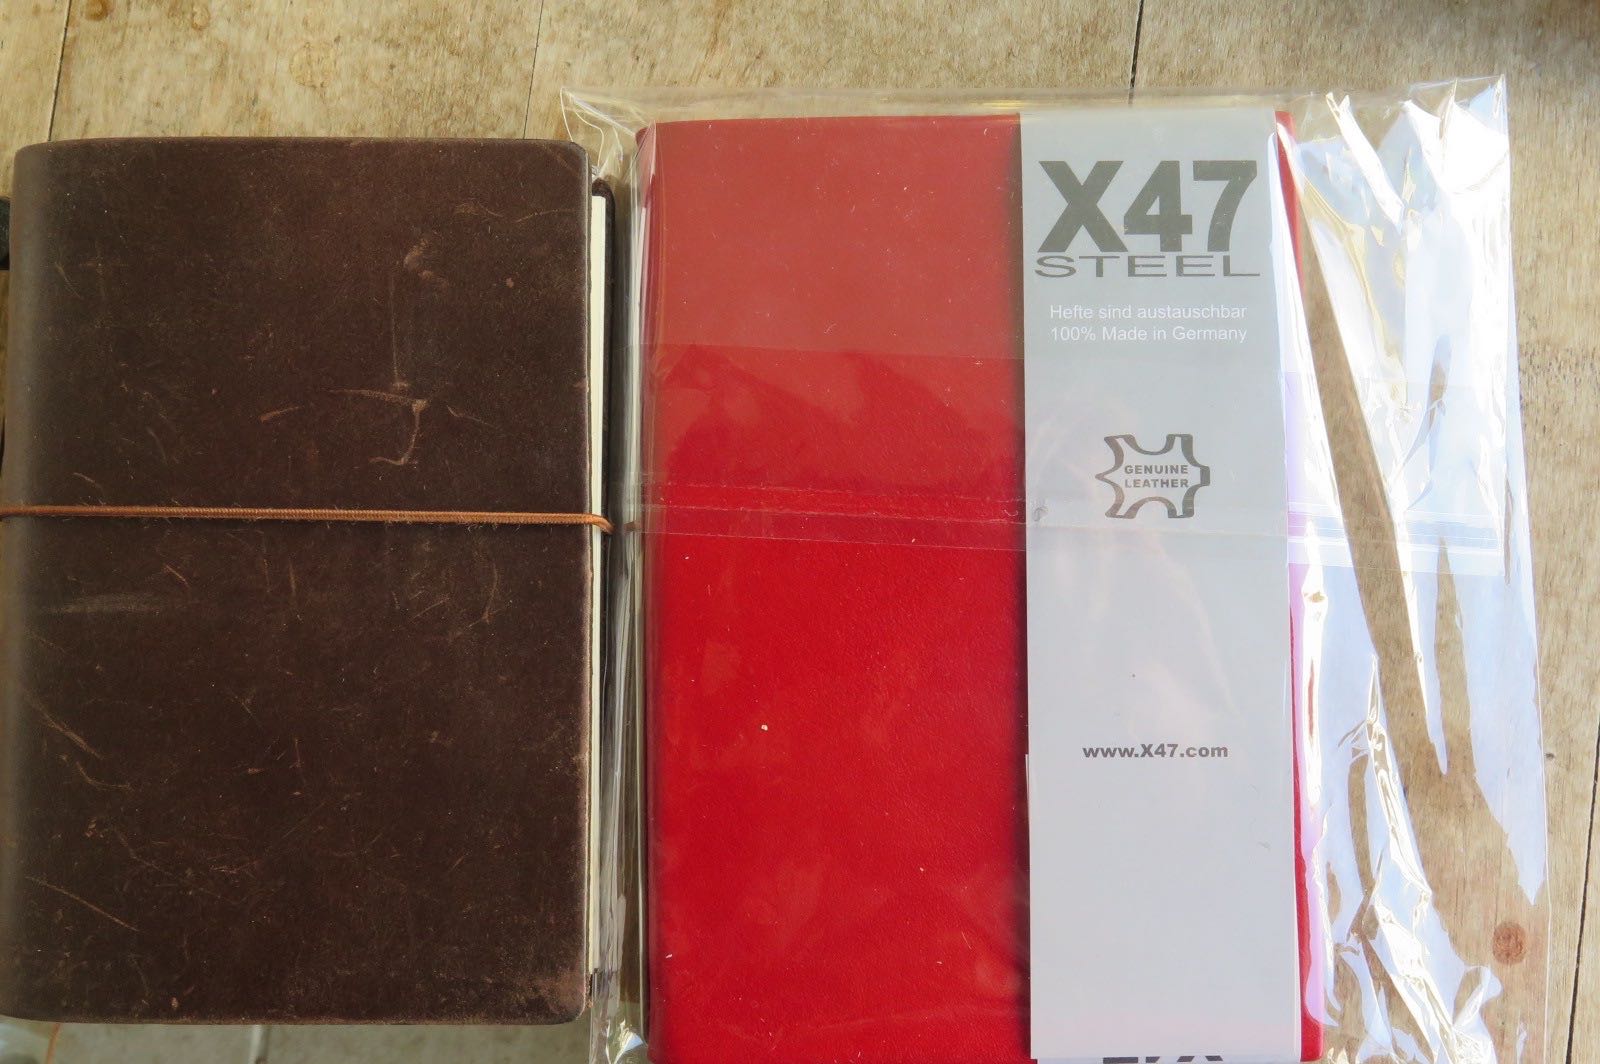 Midori Passport Size vs X47 Steel A6